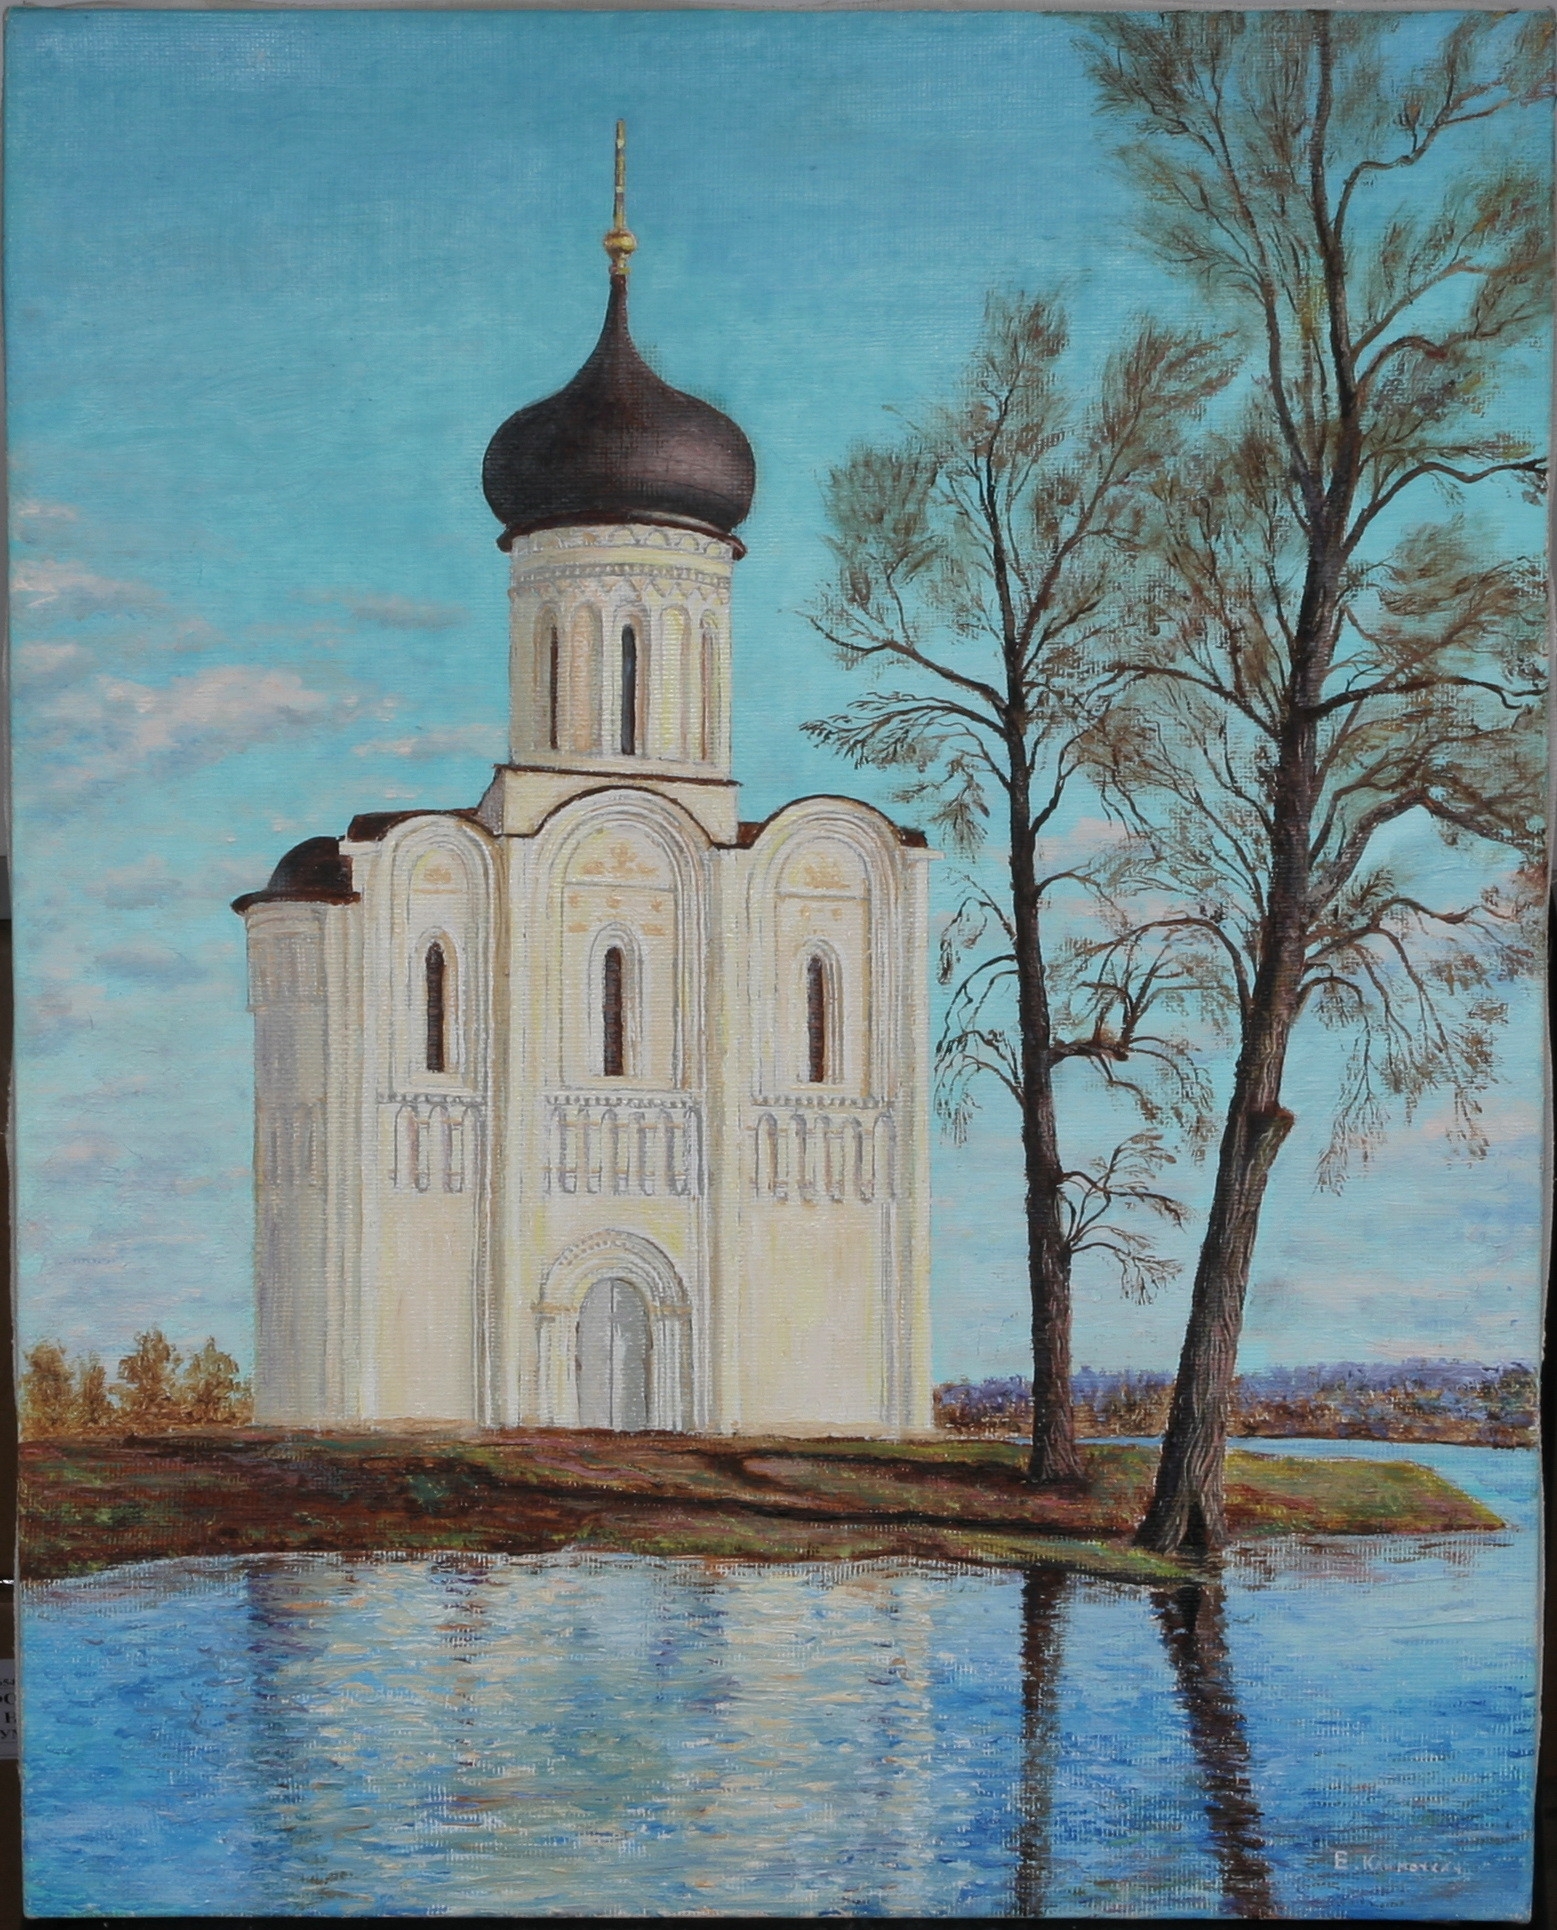 Вышитая работа «Церковь Покрова на Нерли», автор Музалевский Михаил Валентинович